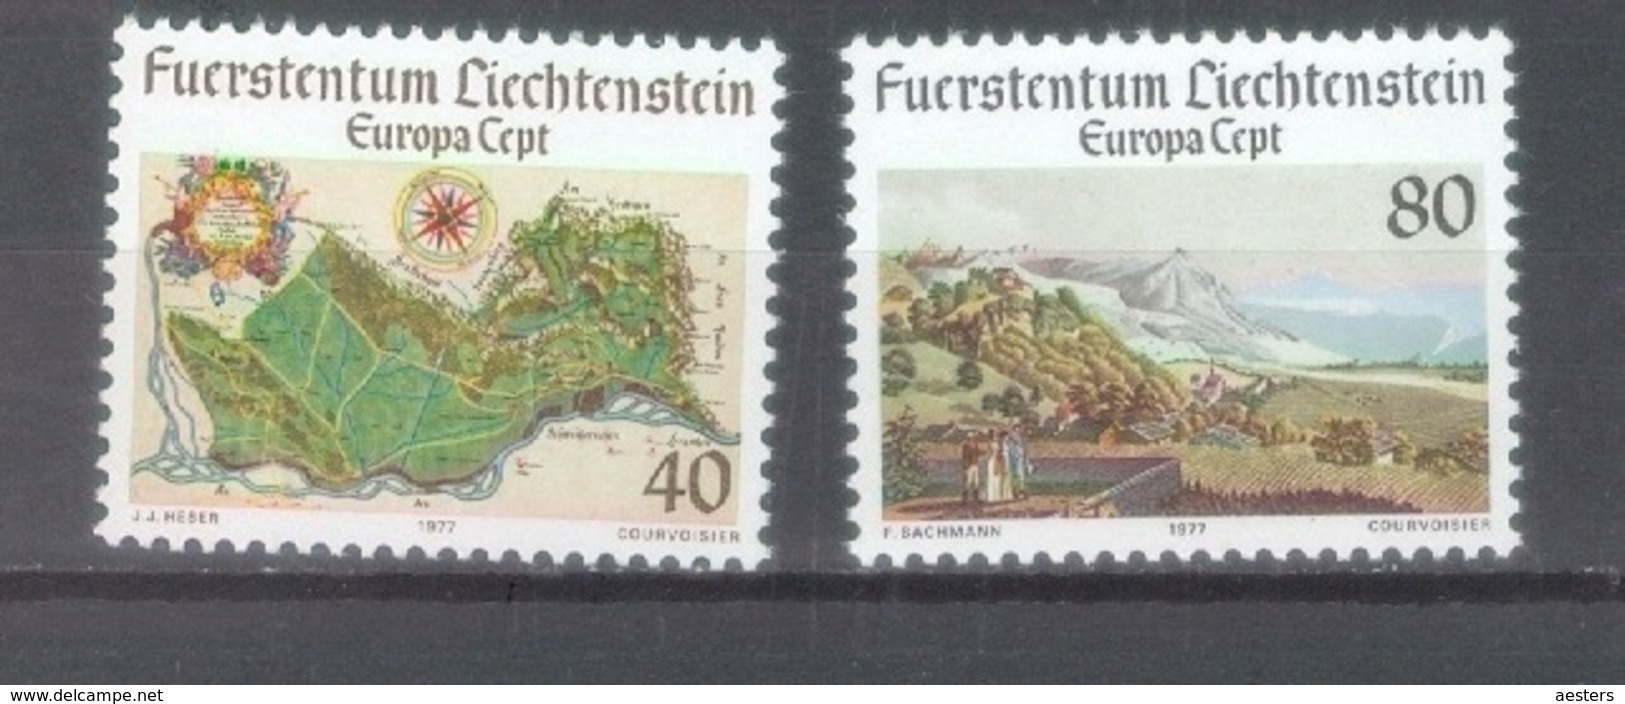 Lichtenstein 1977; Europa Cept, Michel 667-668.** (MNH) - 1977